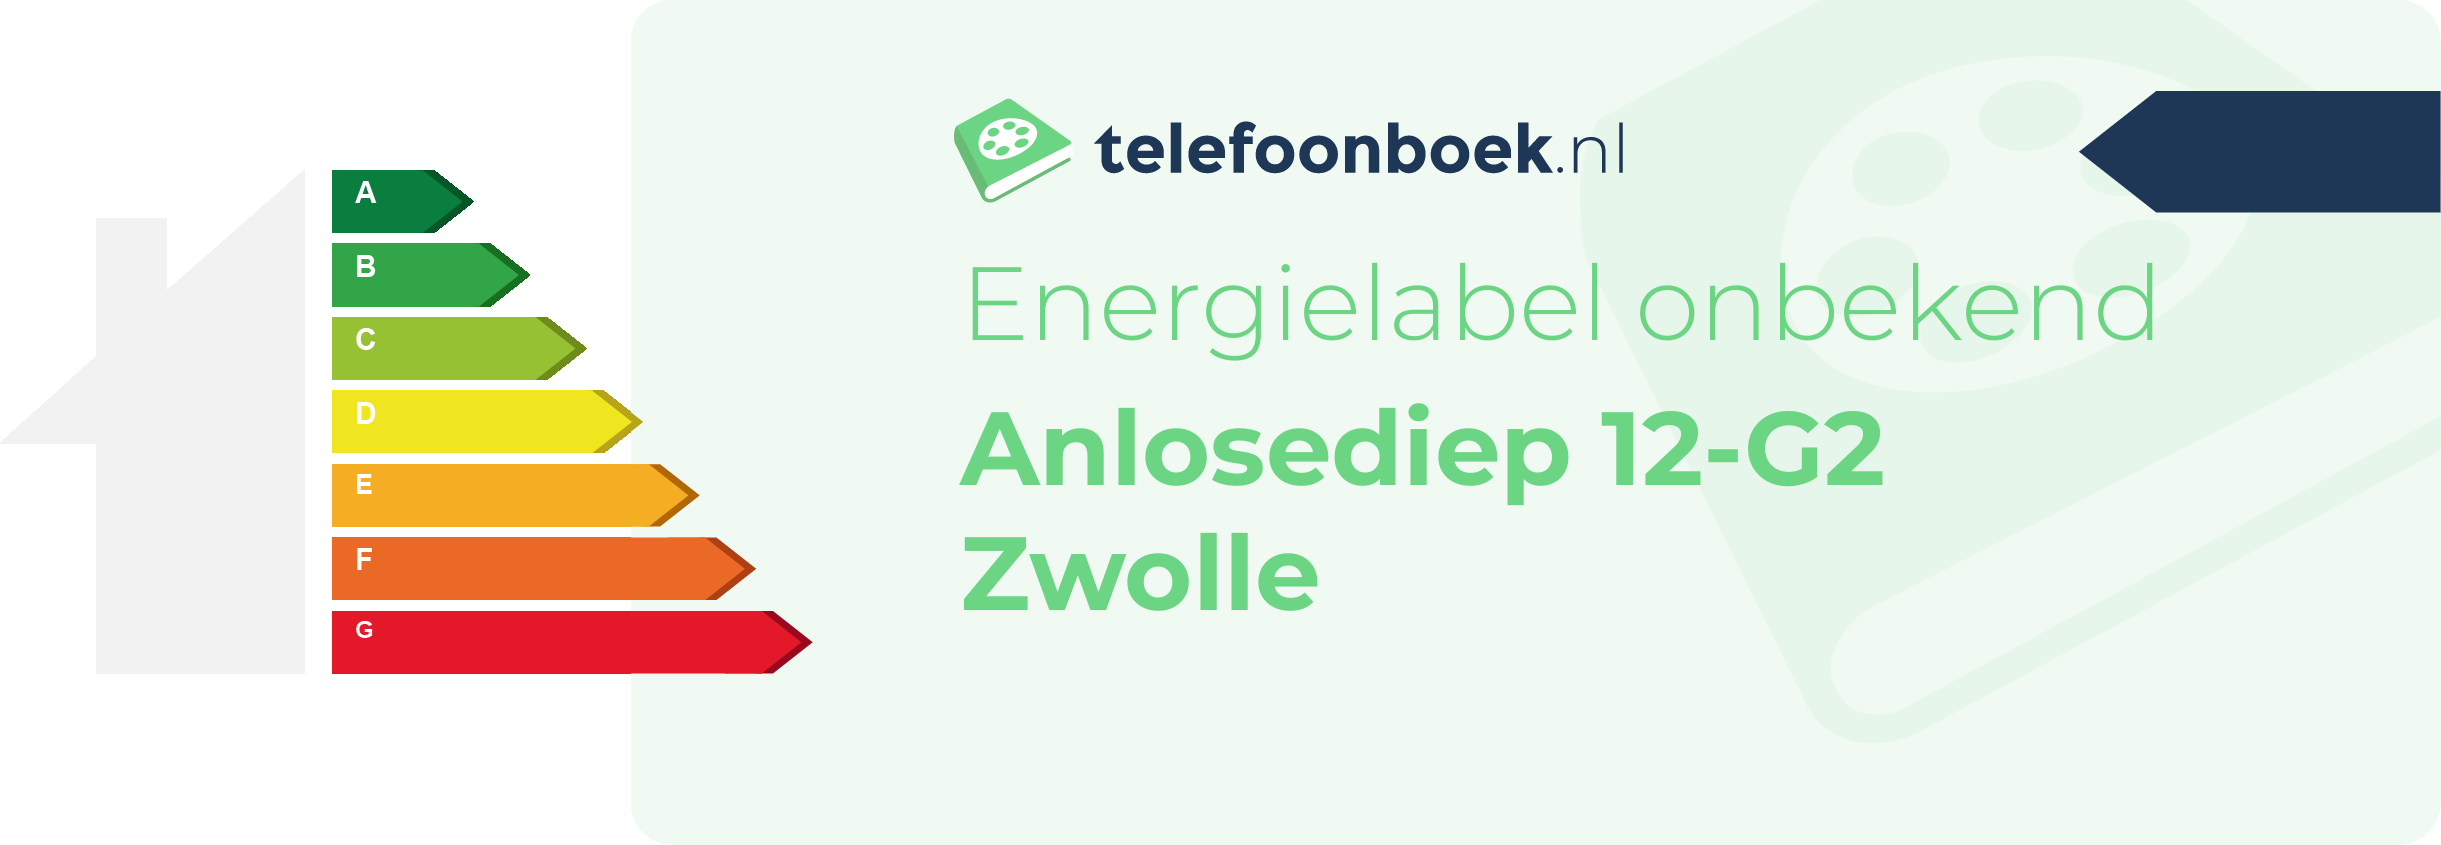 Energielabel Anlosediep 12-G2 Zwolle